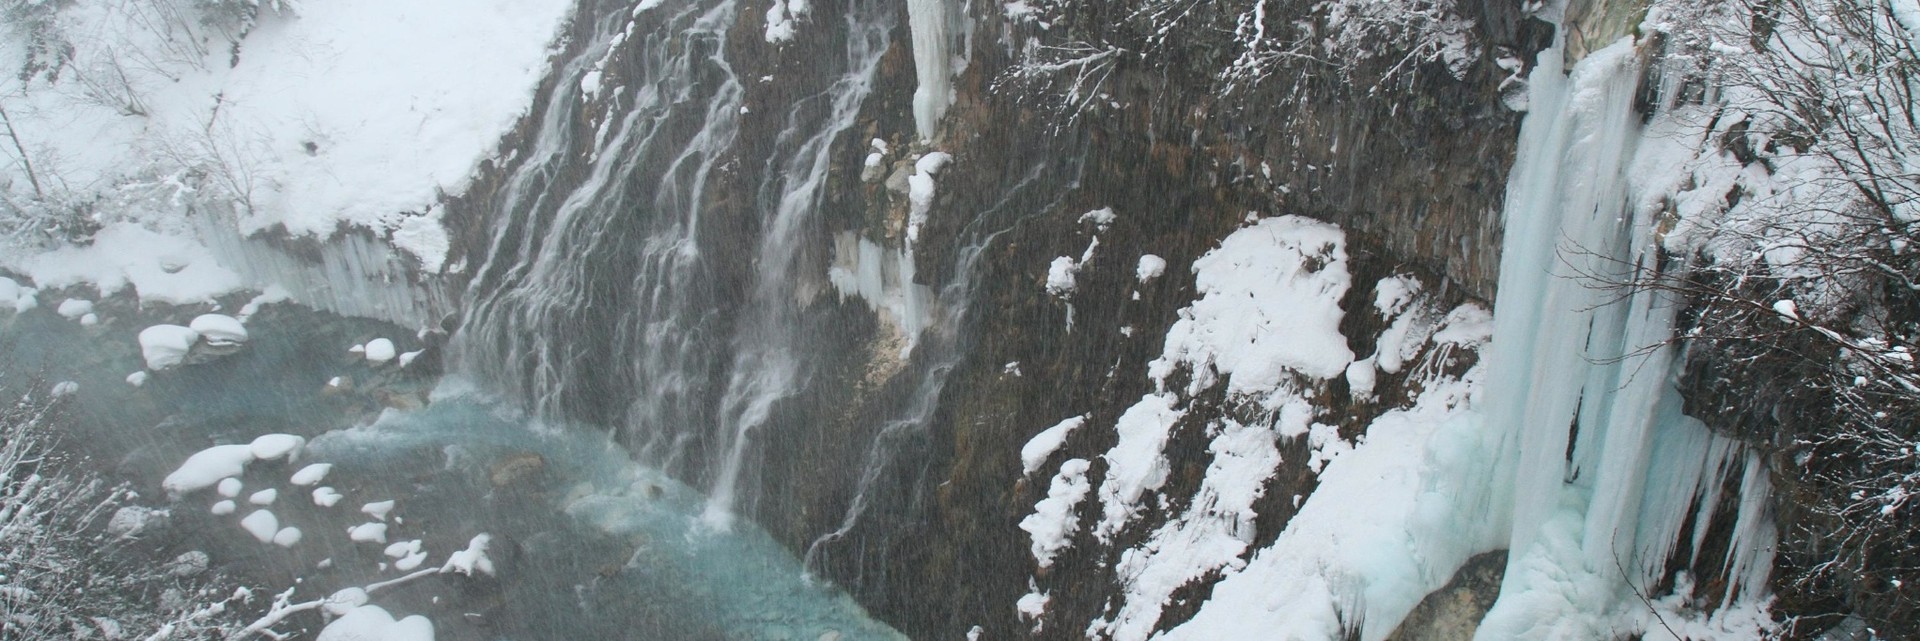 白须瀑布Shirahige Falls